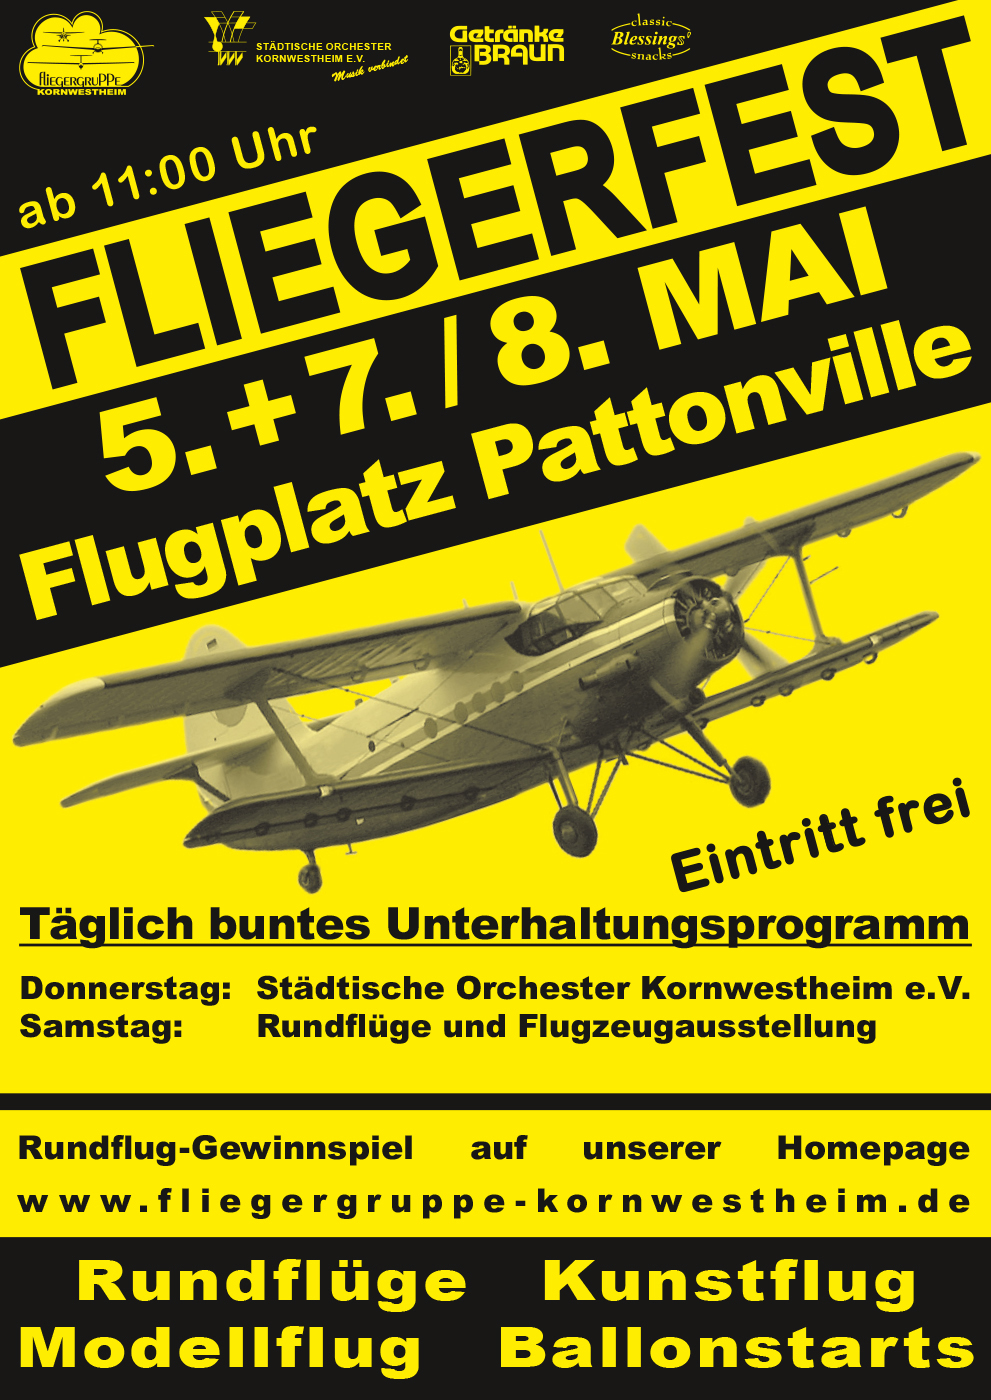 Fliegerfest Kornwestheim Flugplatz Pattonville 2016